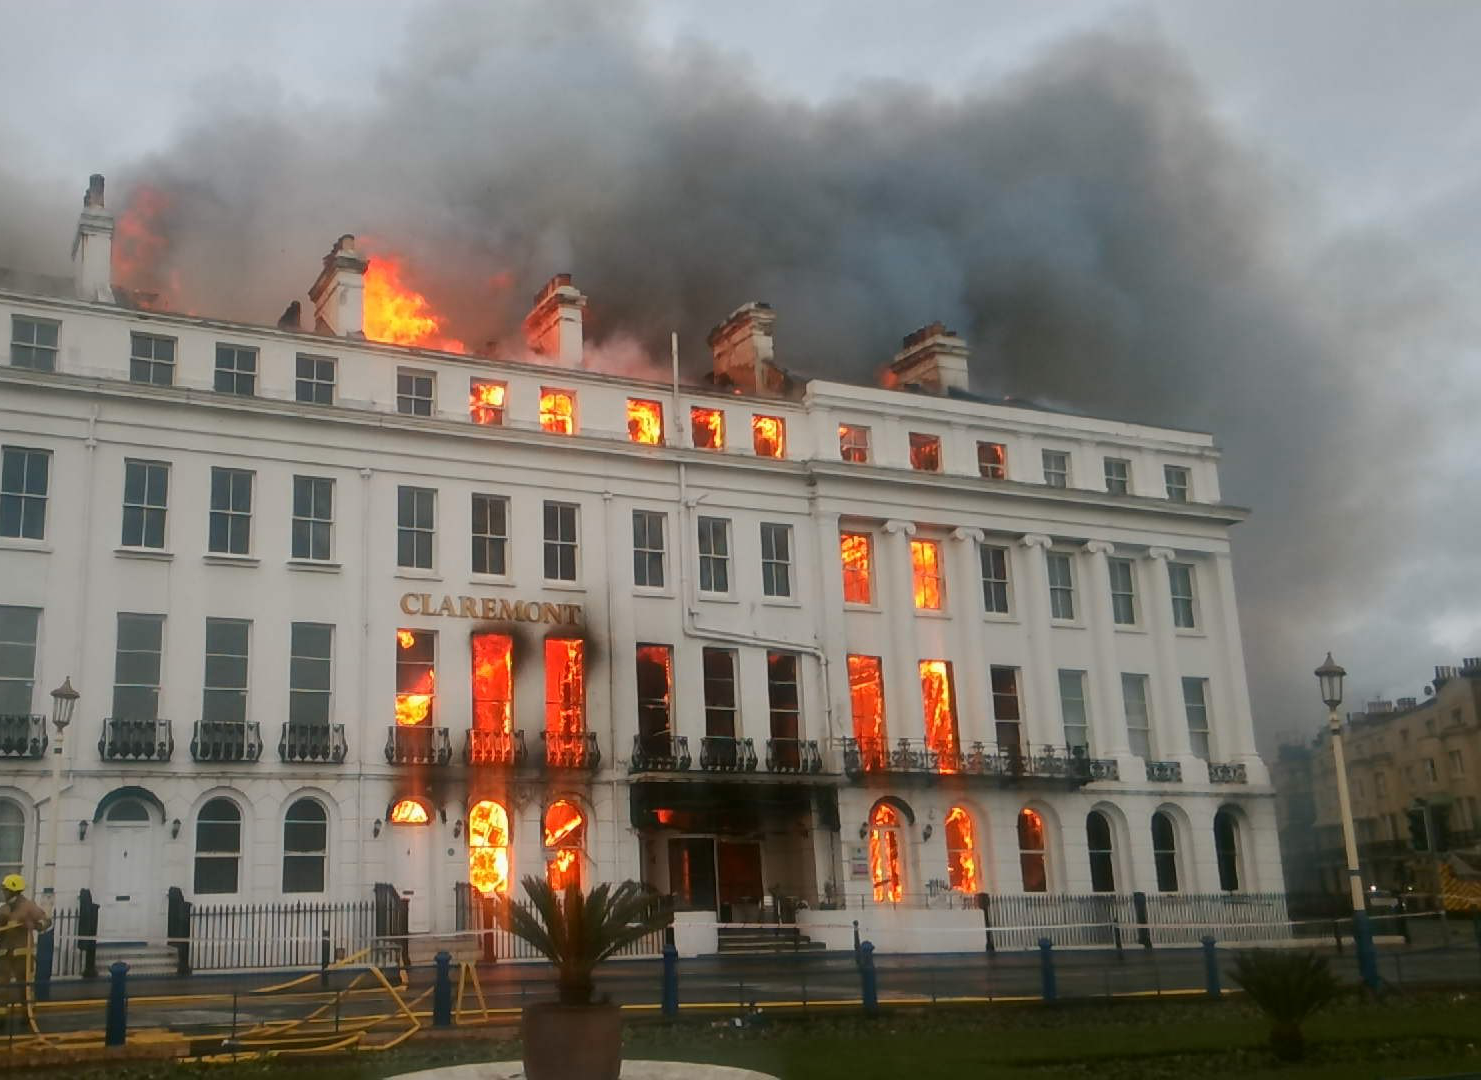 Claremont Hotel fire